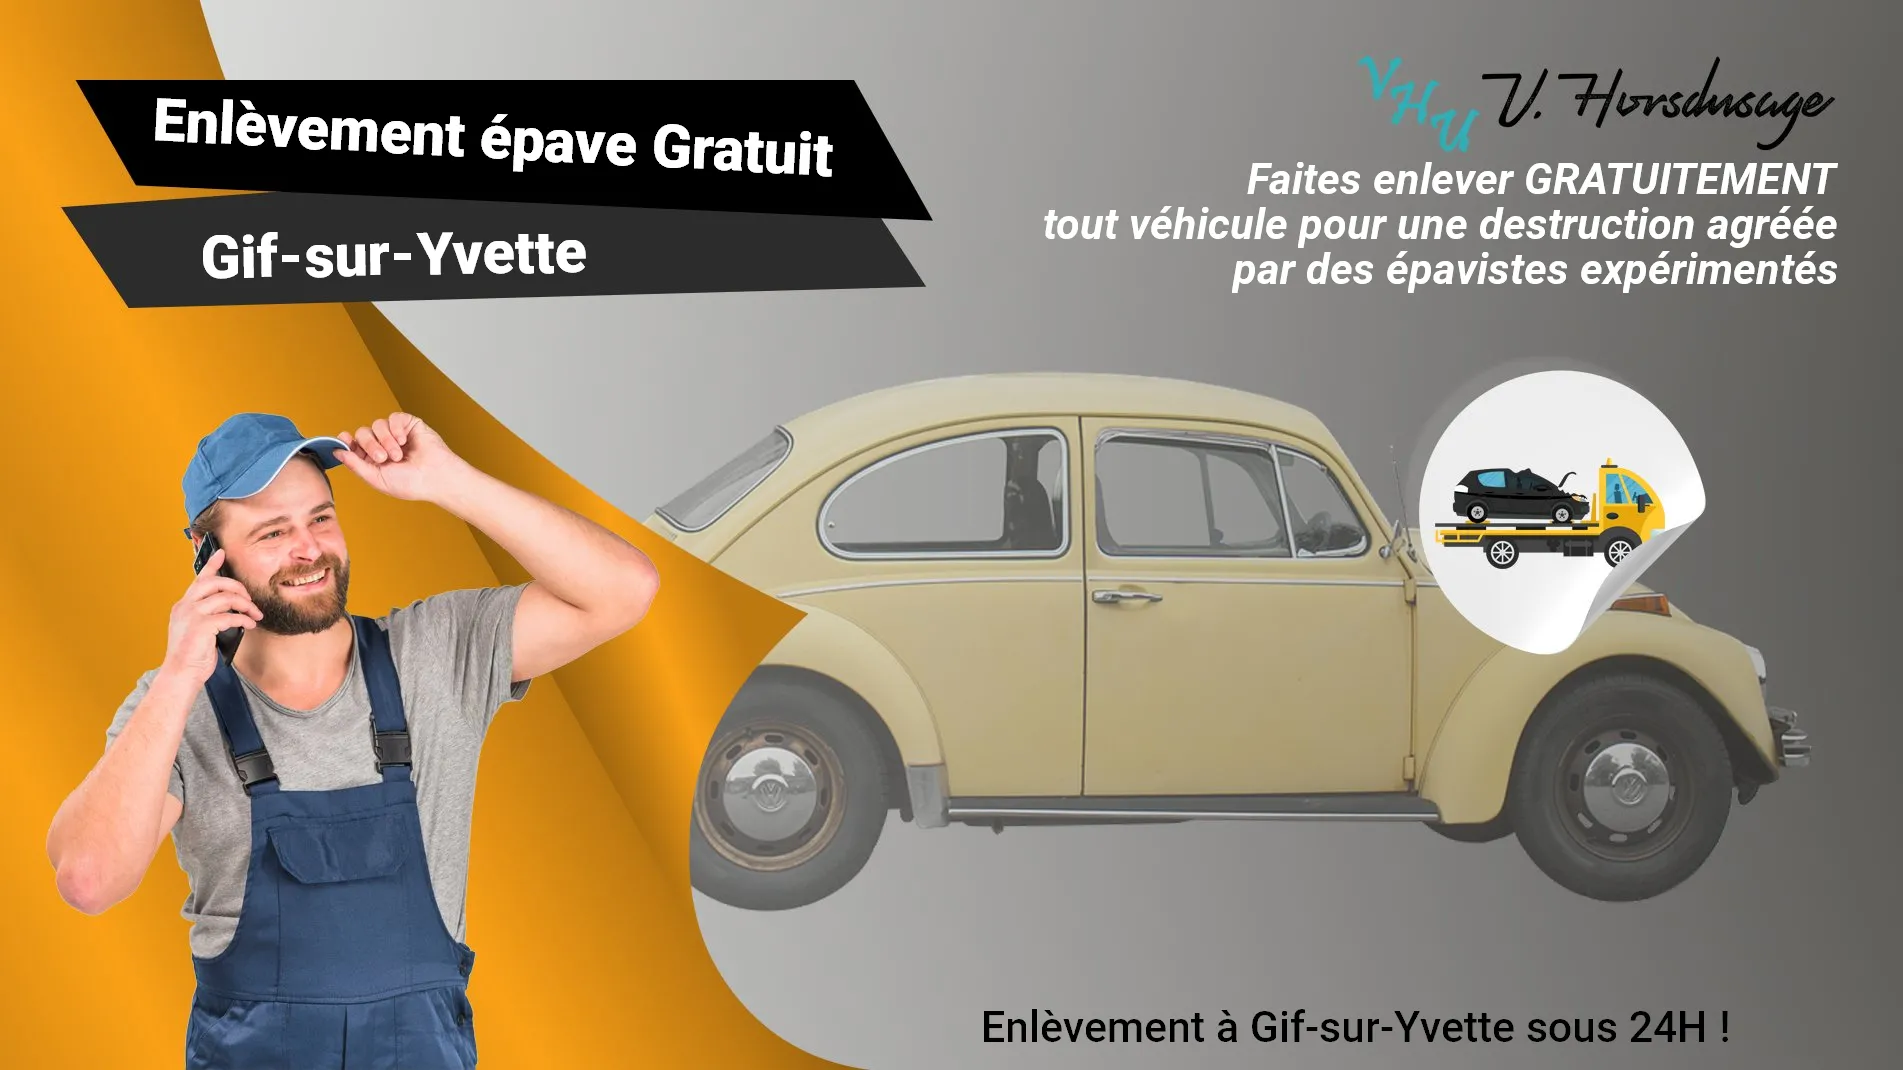 Pour un enlèvement gratuit à Gif-sur-Yvette, contactez nos épavistes agréé VHU